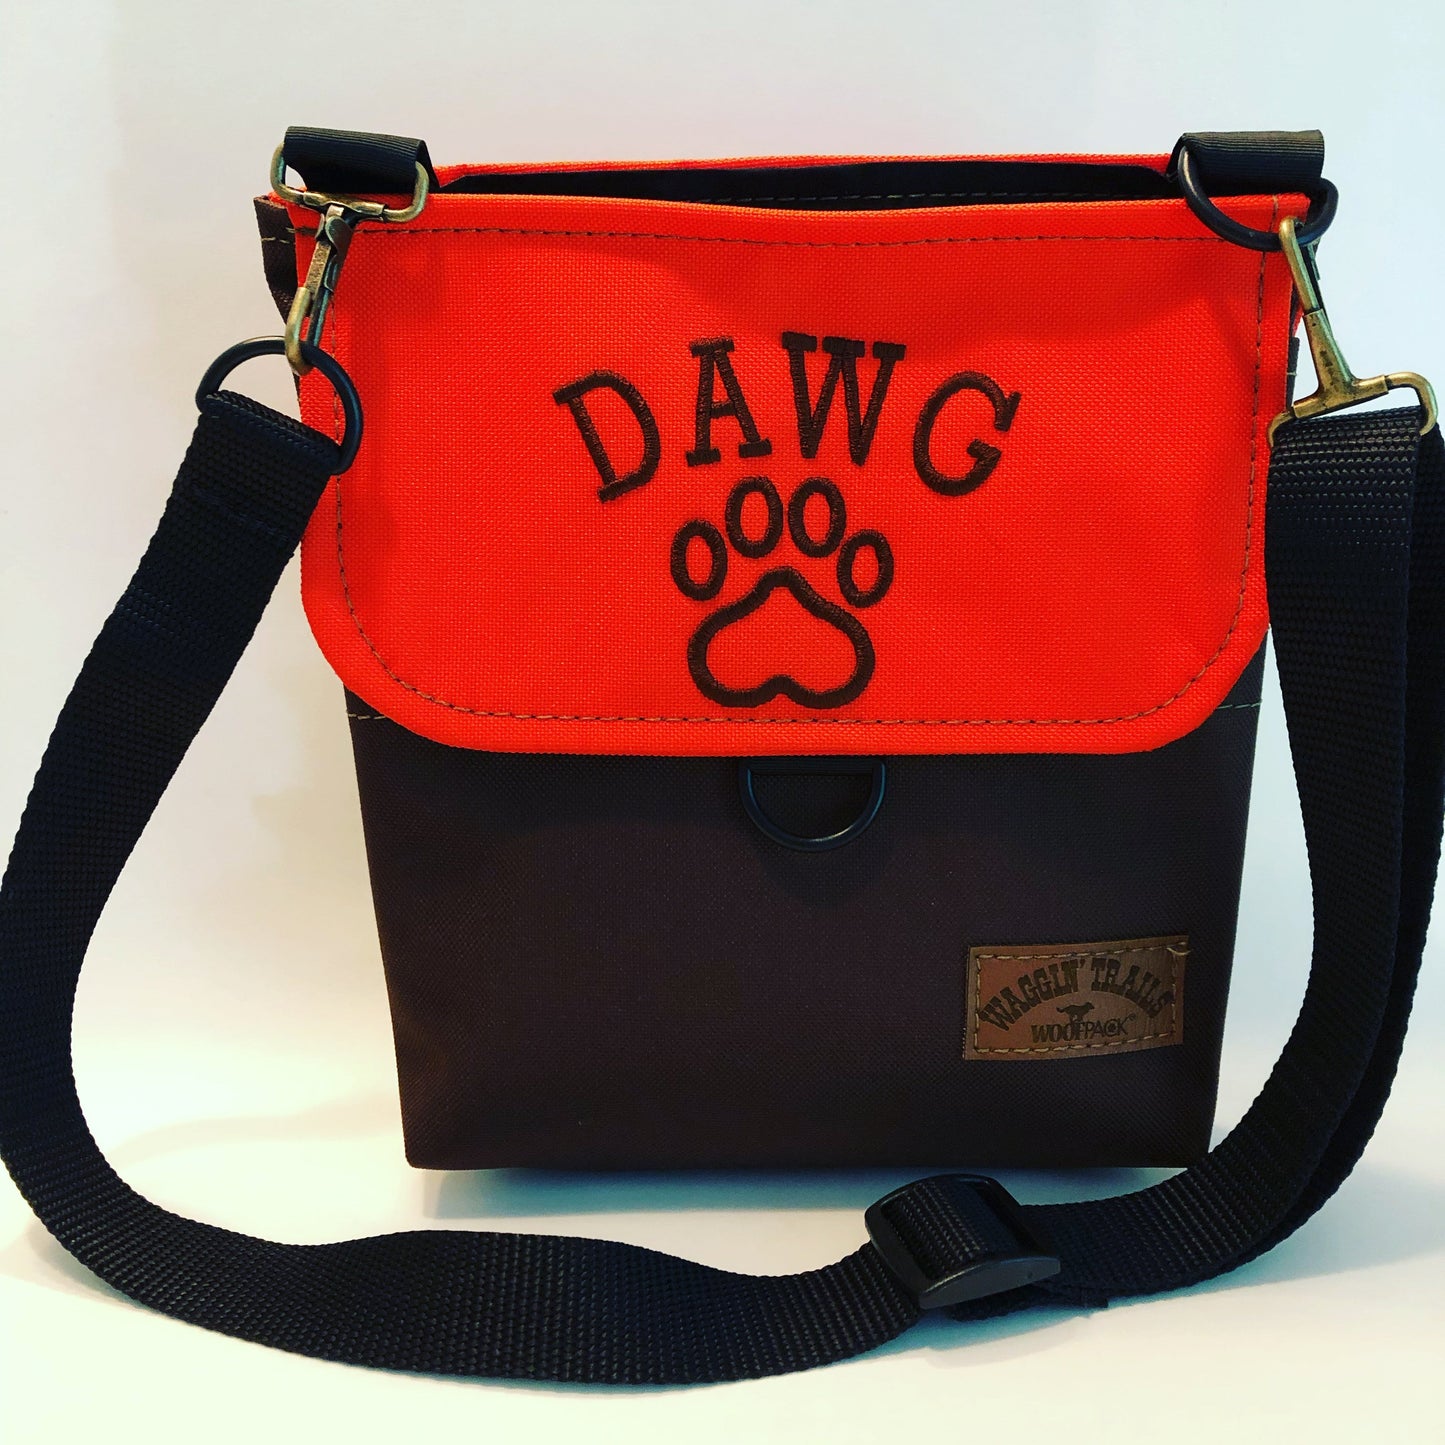 The WoofPack dog walking accessory bag